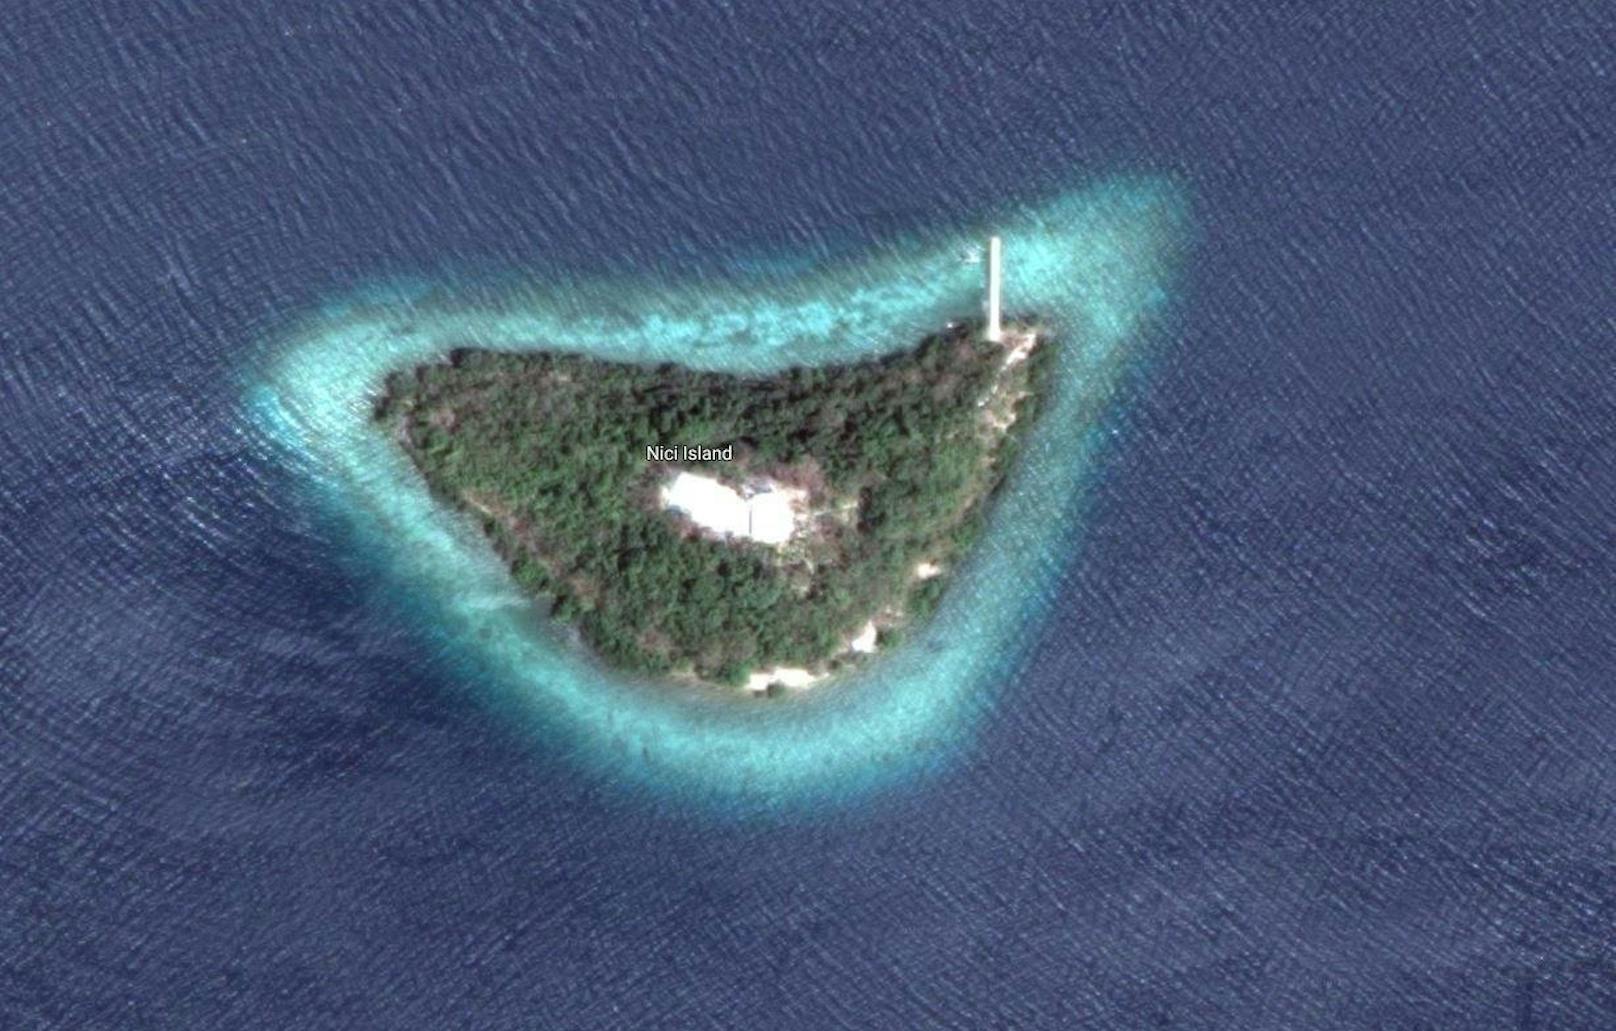 <b>Nici Island, Philippinen</b>
Wenn Sie sich das Haus nicht selber bauen wollen, dann eignet sich für Sie vielleicht eher Nici Island.